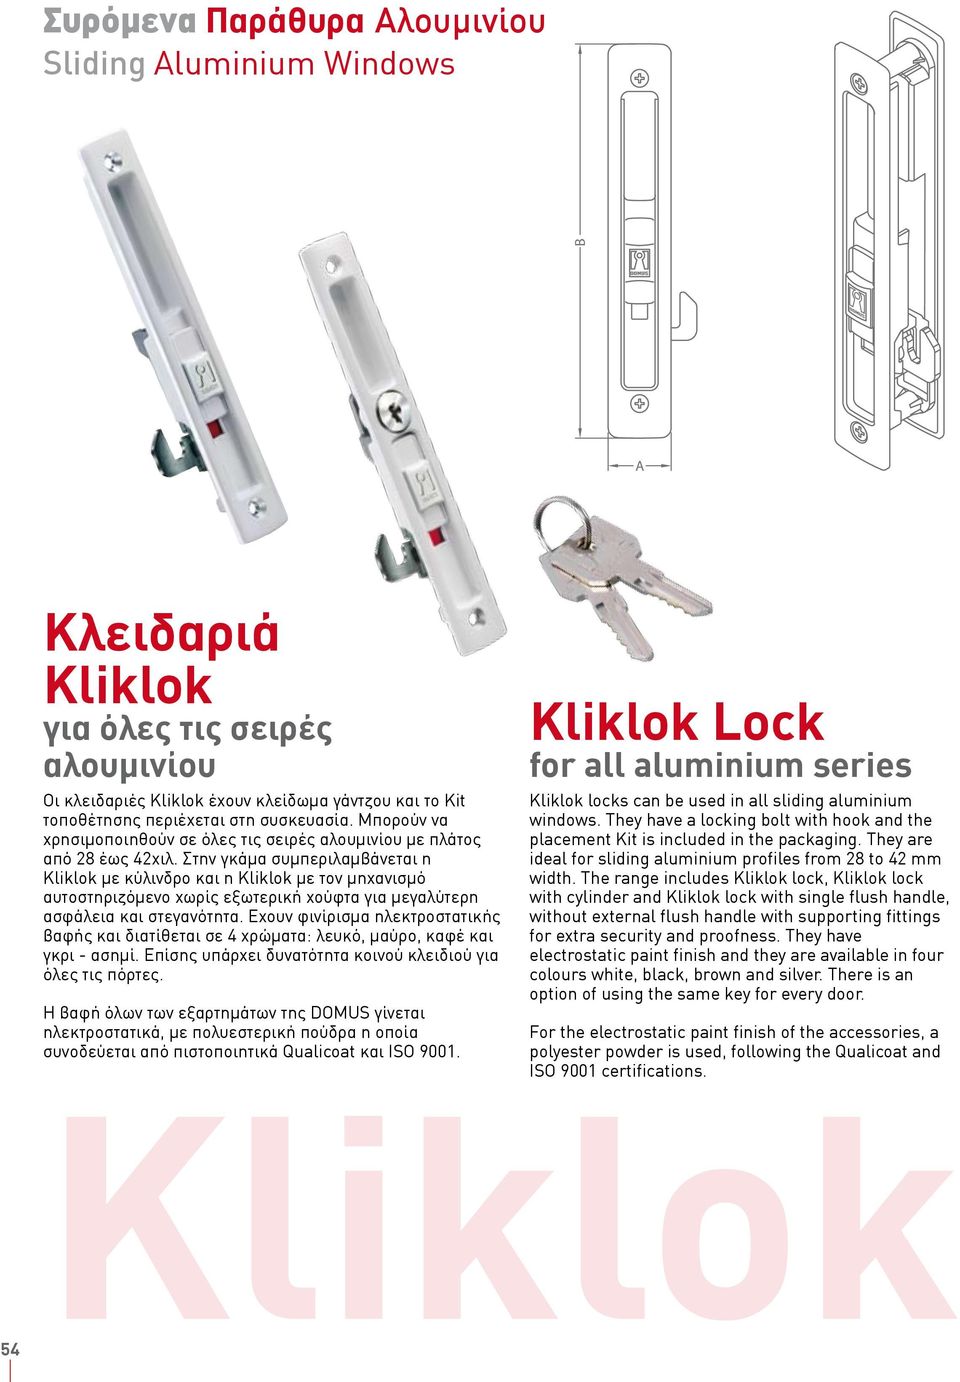 Στην γκάμα συμπεριλαμβάνεται η Kliklok με κύλινδρο και η Kliklok με τον μηχανισμό αυτοστηριζόμενο χωρίς εξωτερική χούφτα για μεγαλύτερη ασφάλεια και στεγανότητα.